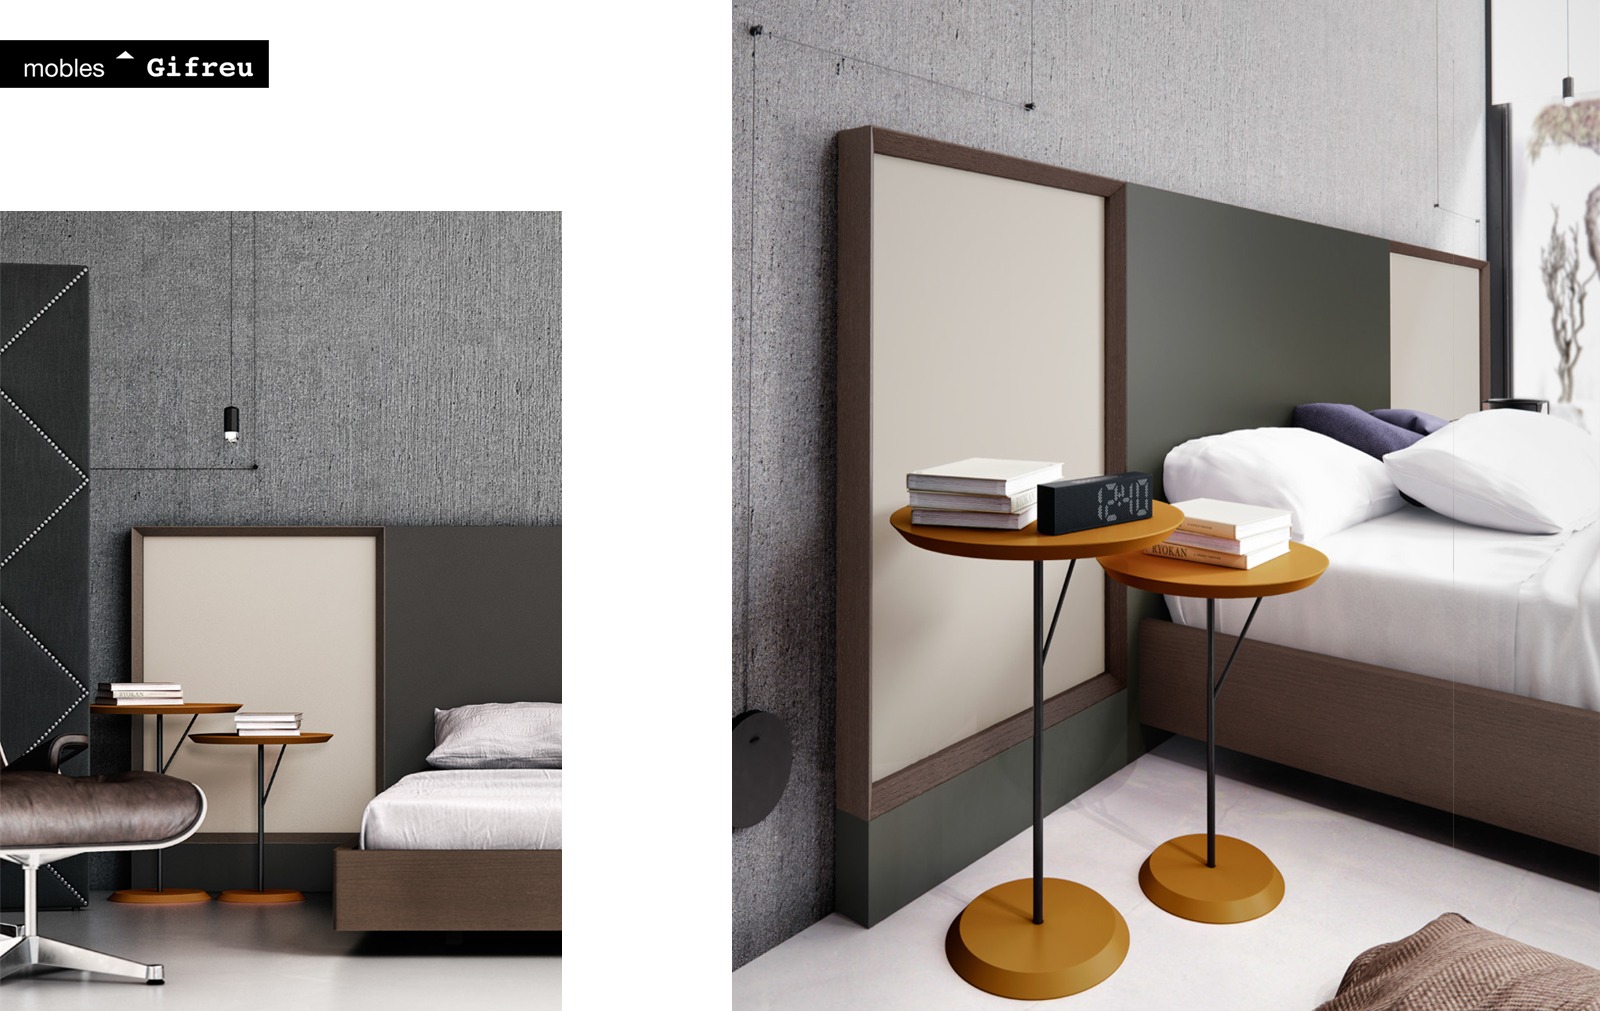 Detall-bedrooms-emede-md-by-mobles-gifreu-llits-grans-matrimoni-singel-disseny-actual-qualitat-premium